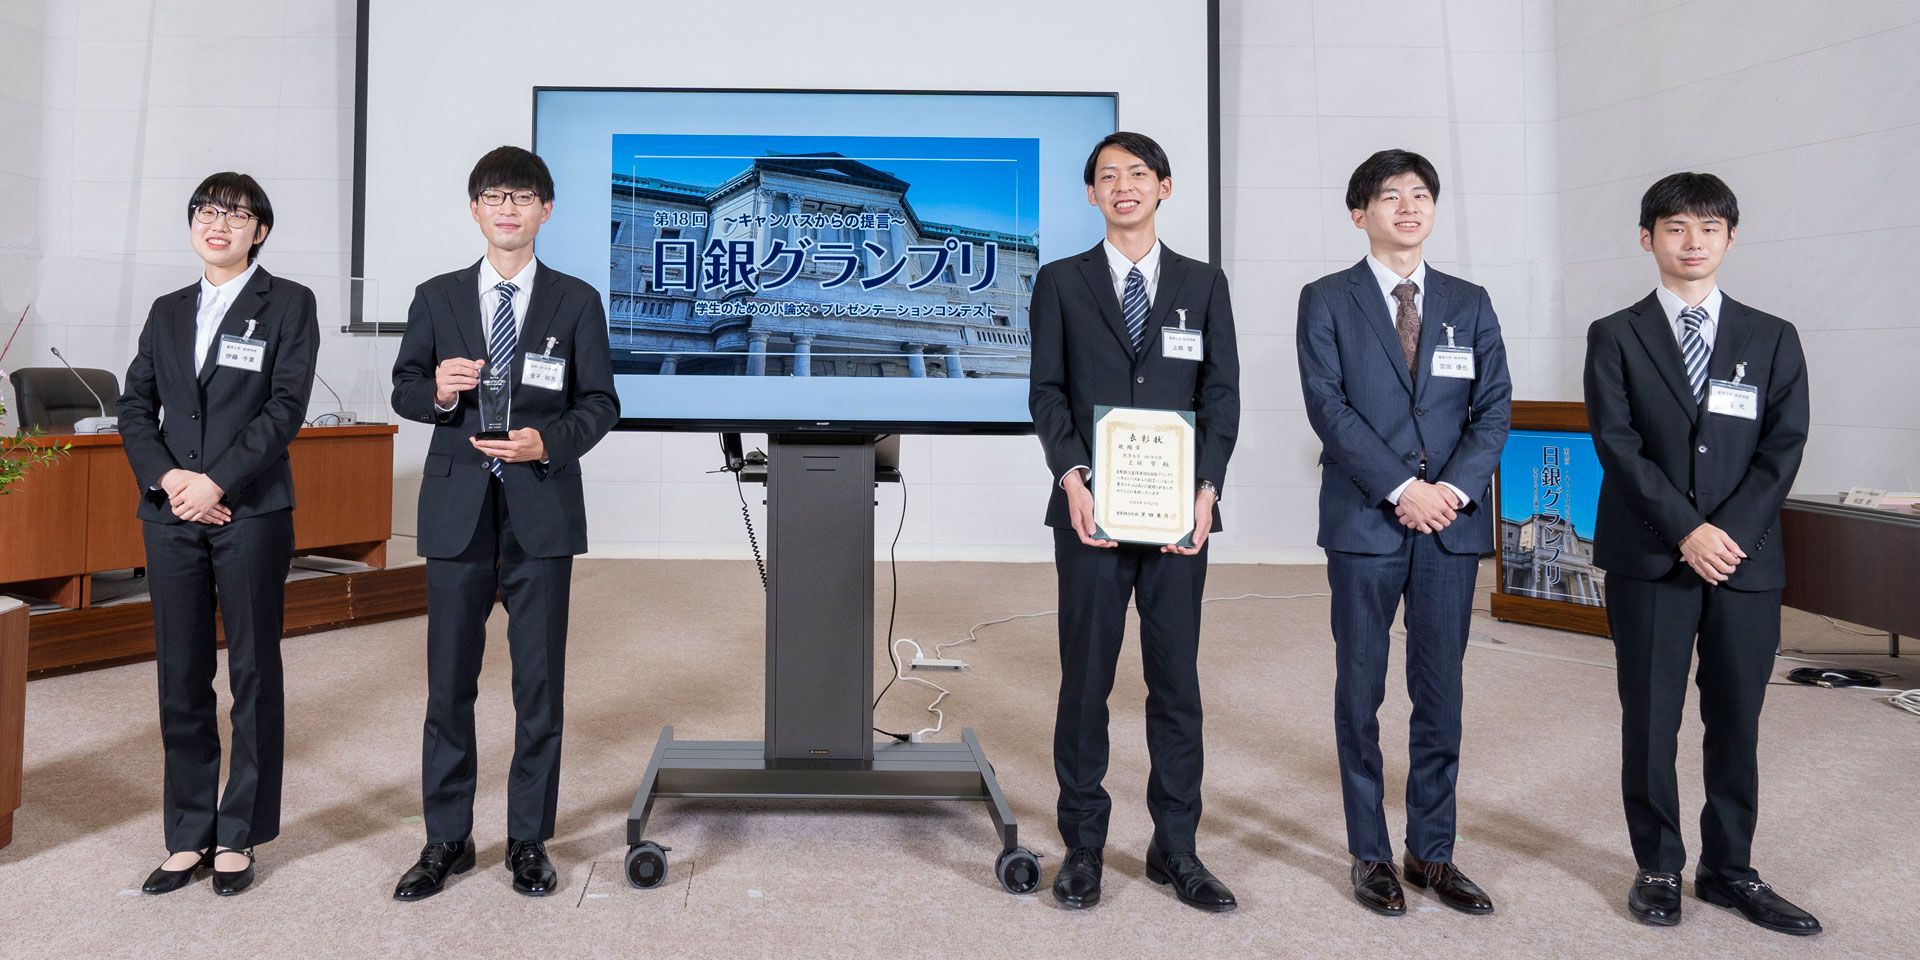 麗澤大学チームの学生5人が、横一列に起立して記念撮影している様子